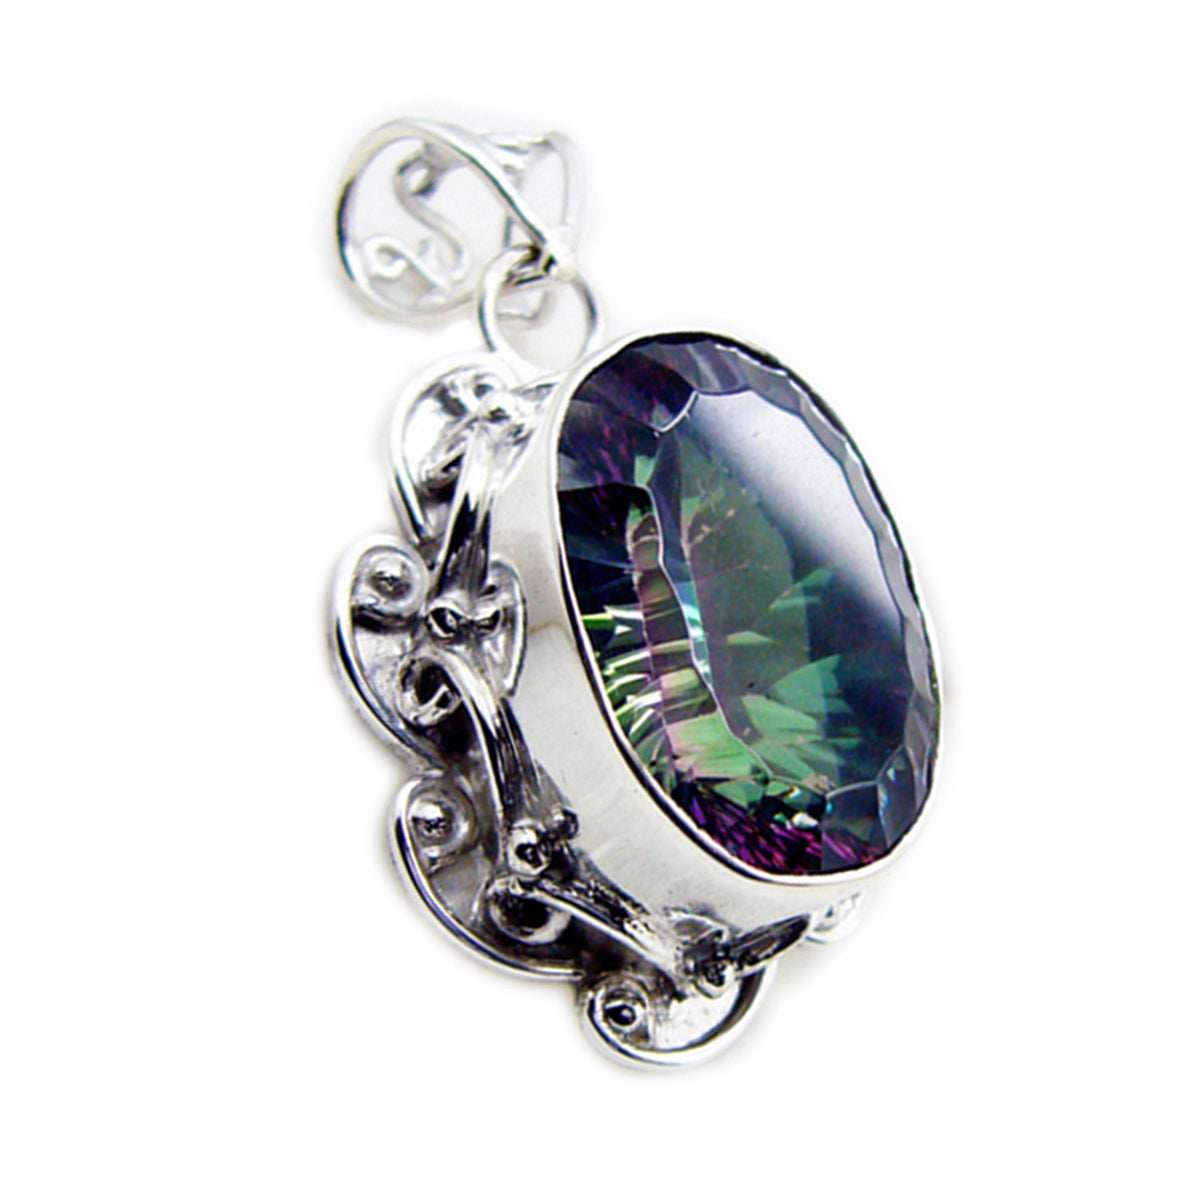 Riyo – pierres précieuses esthétiques ovales à facettes multicolores, quartz mystique, pendentif en argent, cadeau pour femme